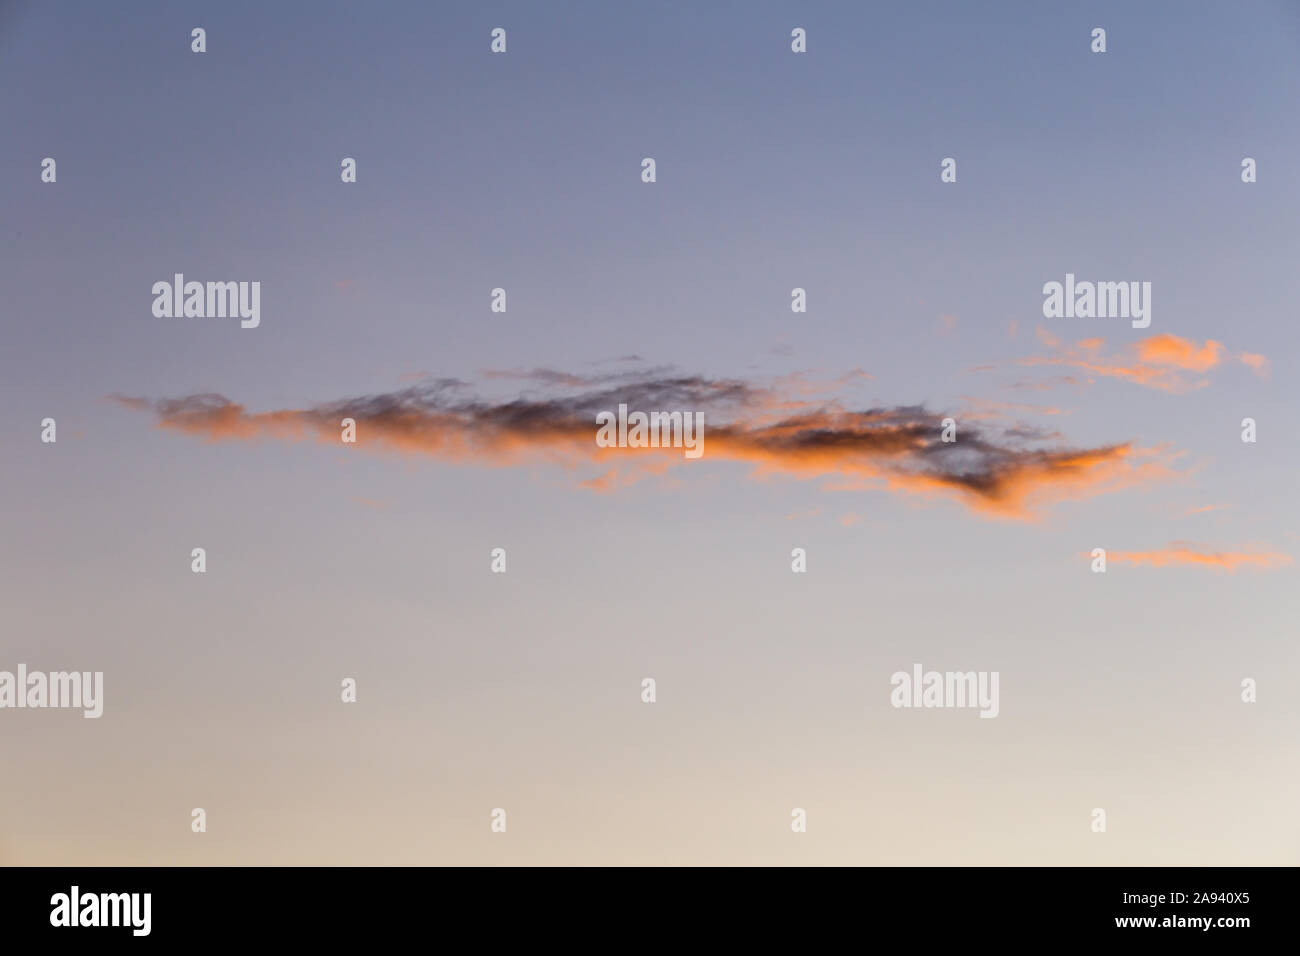 Herbst Himmel vor der Morgendämmerung, die ersten Sonnenstrahlen Farbe des Himmels mit Wolken. Hintergrund, Textur, Platz für Text. Stockfoto